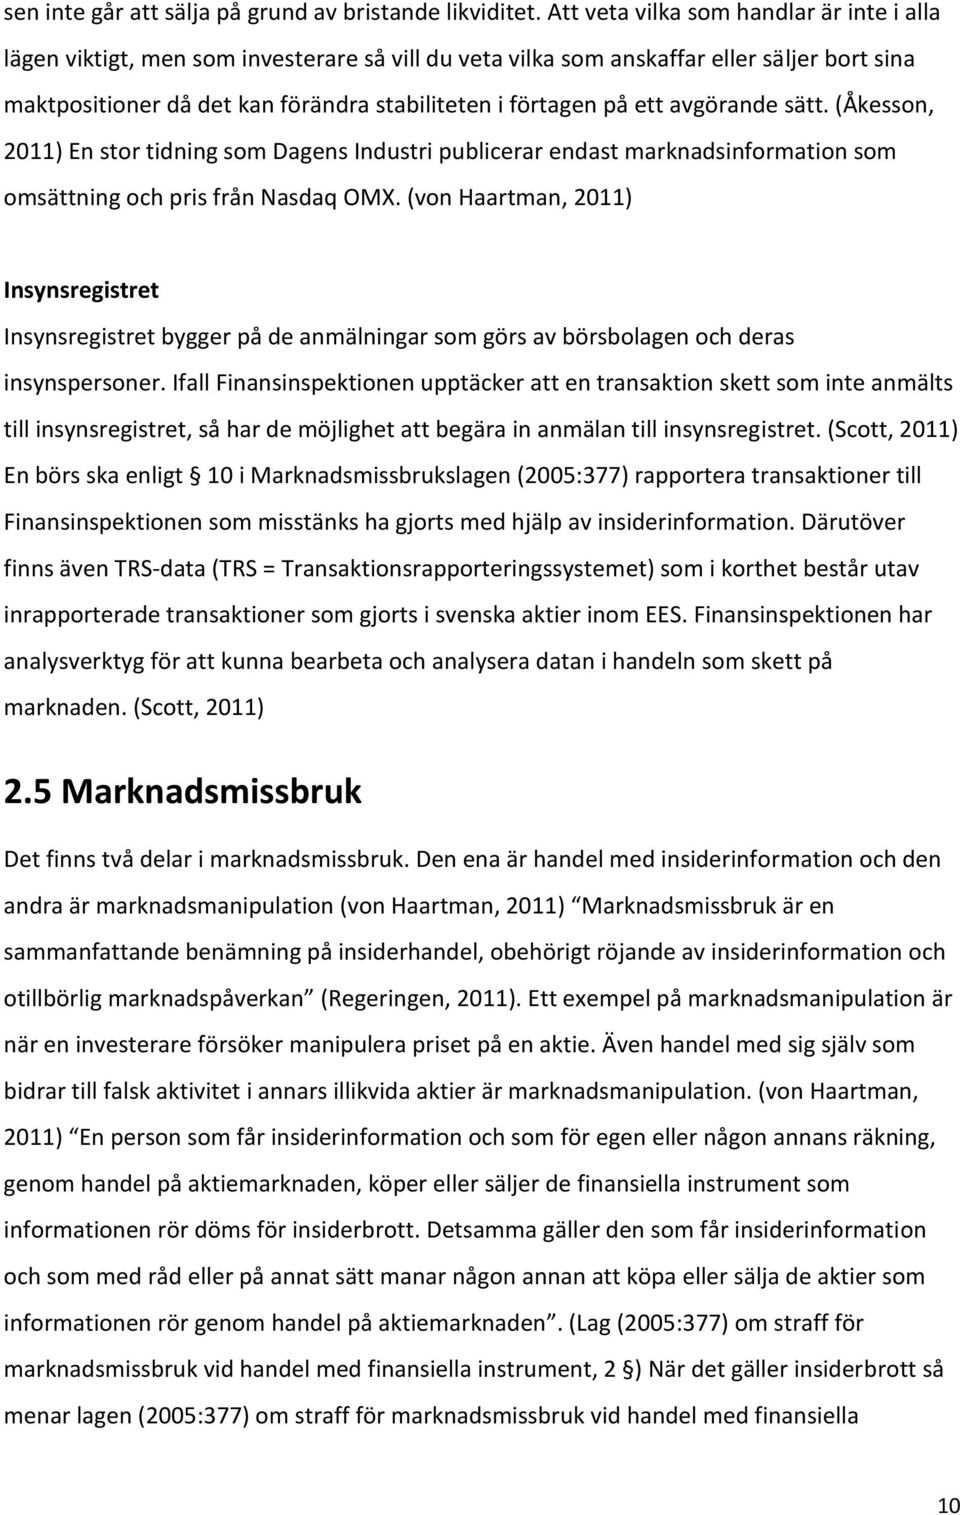 ett avgörande sätt. (Åkesson, 2011) En stor tidning som Dagens Industri publicerar endast marknadsinformation som omsättning och pris från Nasdaq OMX.